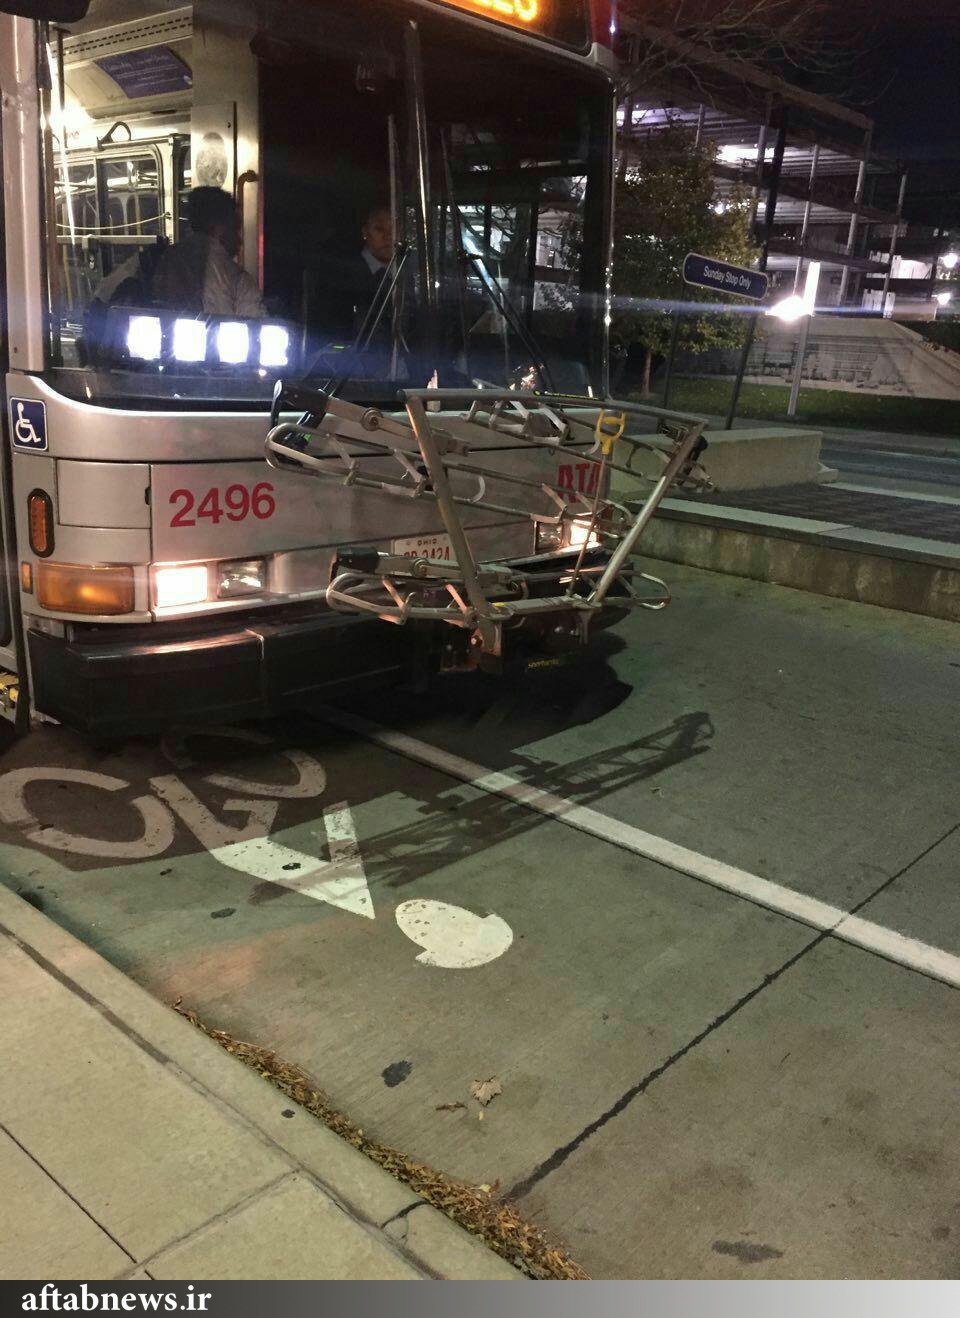 عکس/ باربند مخصوص حمل دوچرخه بر روی اتوبوس